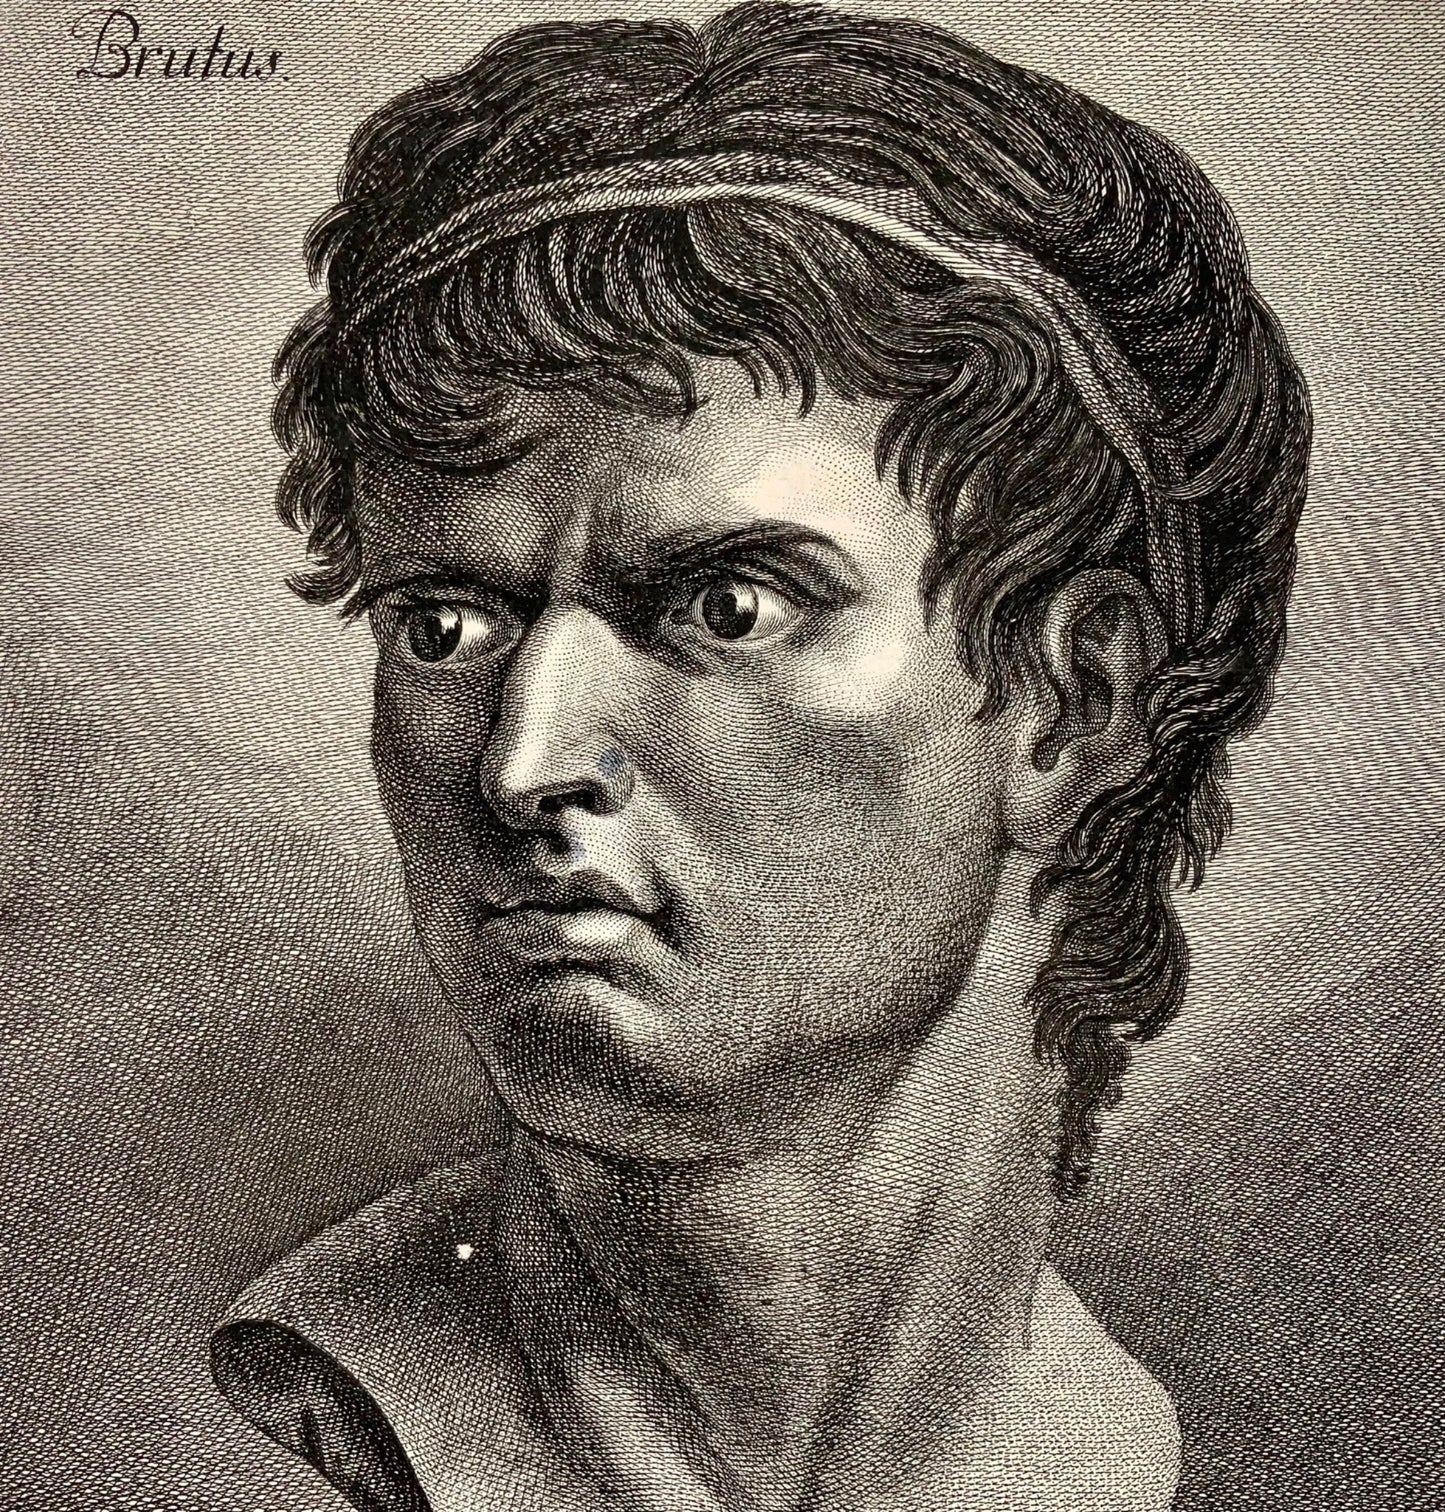 1780 Brutus, grande étude physionomique gravée par Robert Brichel, portrait